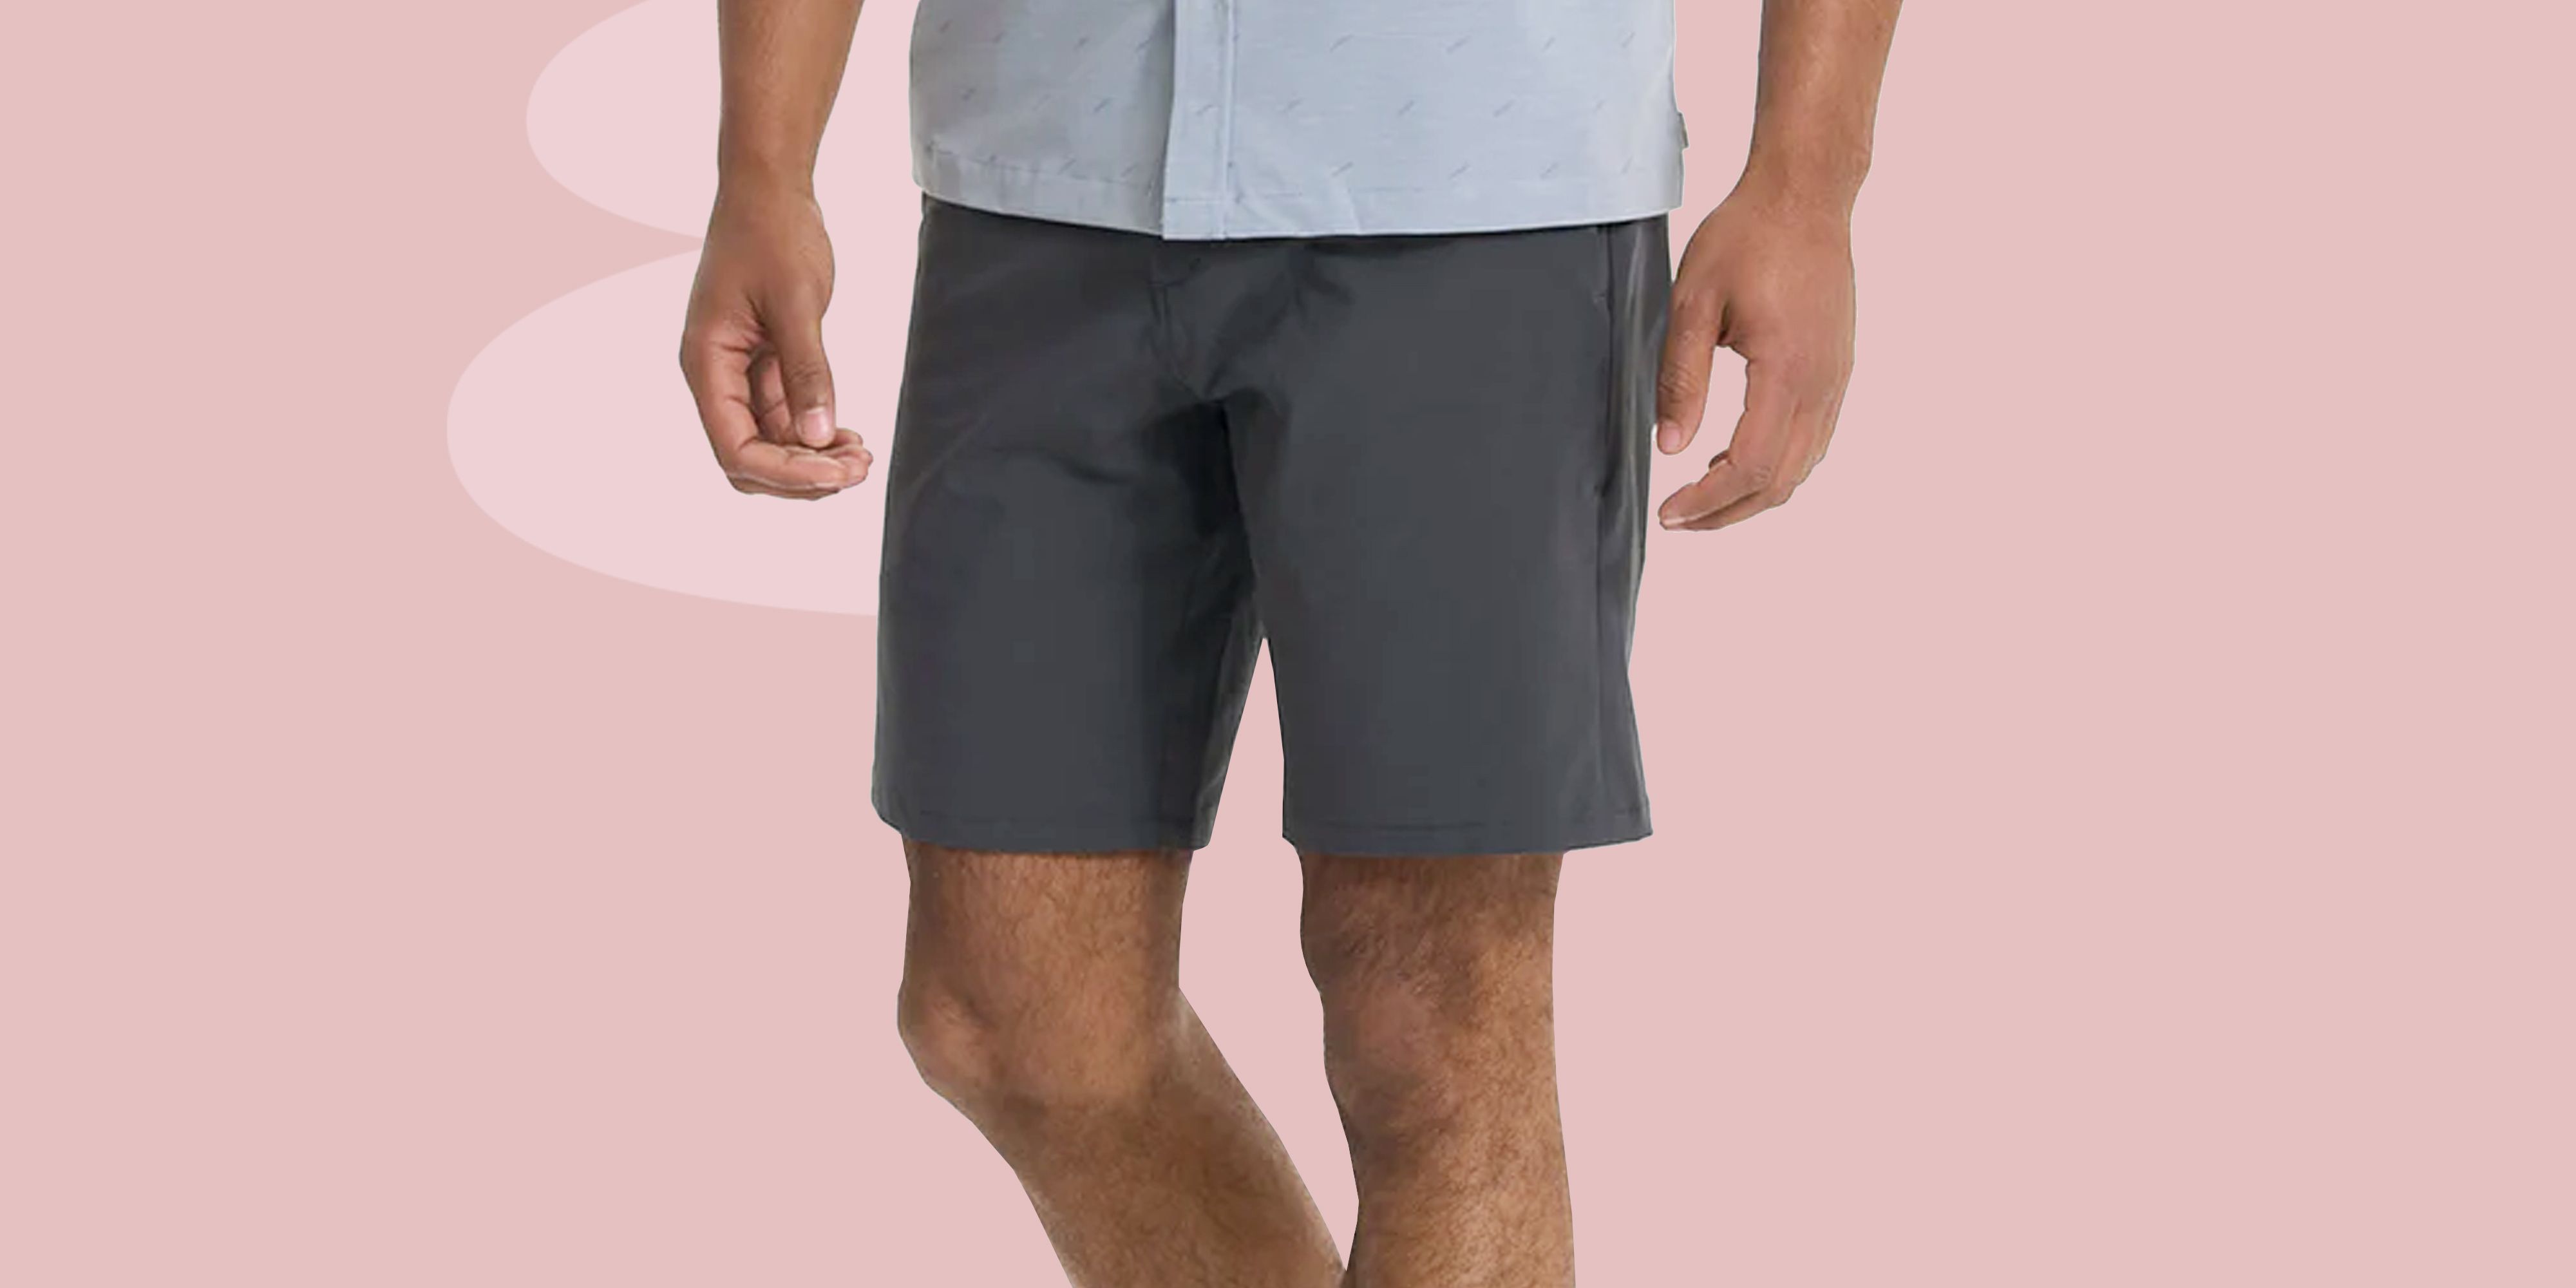 62 Half pant ideas  mens shorts, mens outfits, shorts